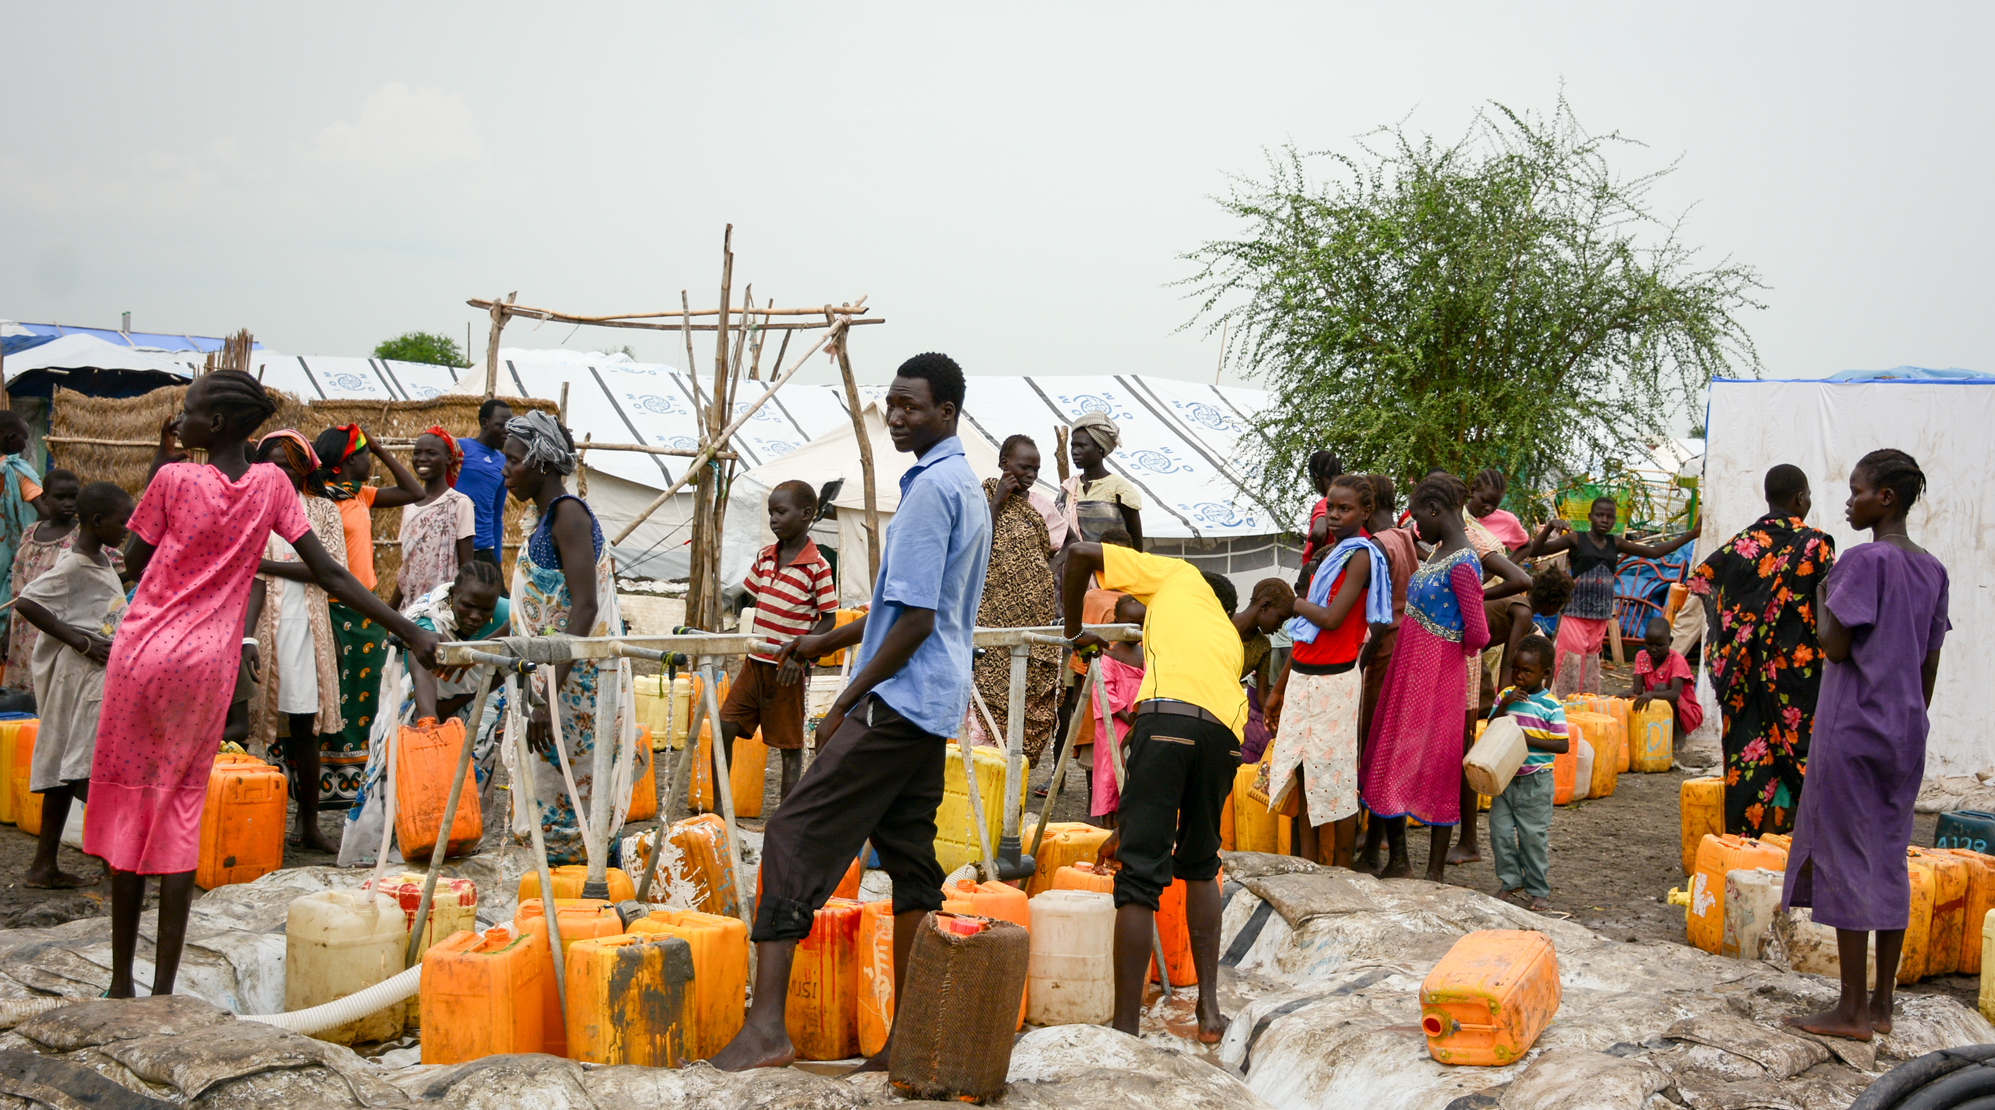 Die hygienischen Bedingungen in den Flüchtlingscamps sind besorgniserregend. World Vision sorgt für Zugang zu sauberem Trinkwasser, baut Sanitäranlagen und führt Hygieneschulungen durch.